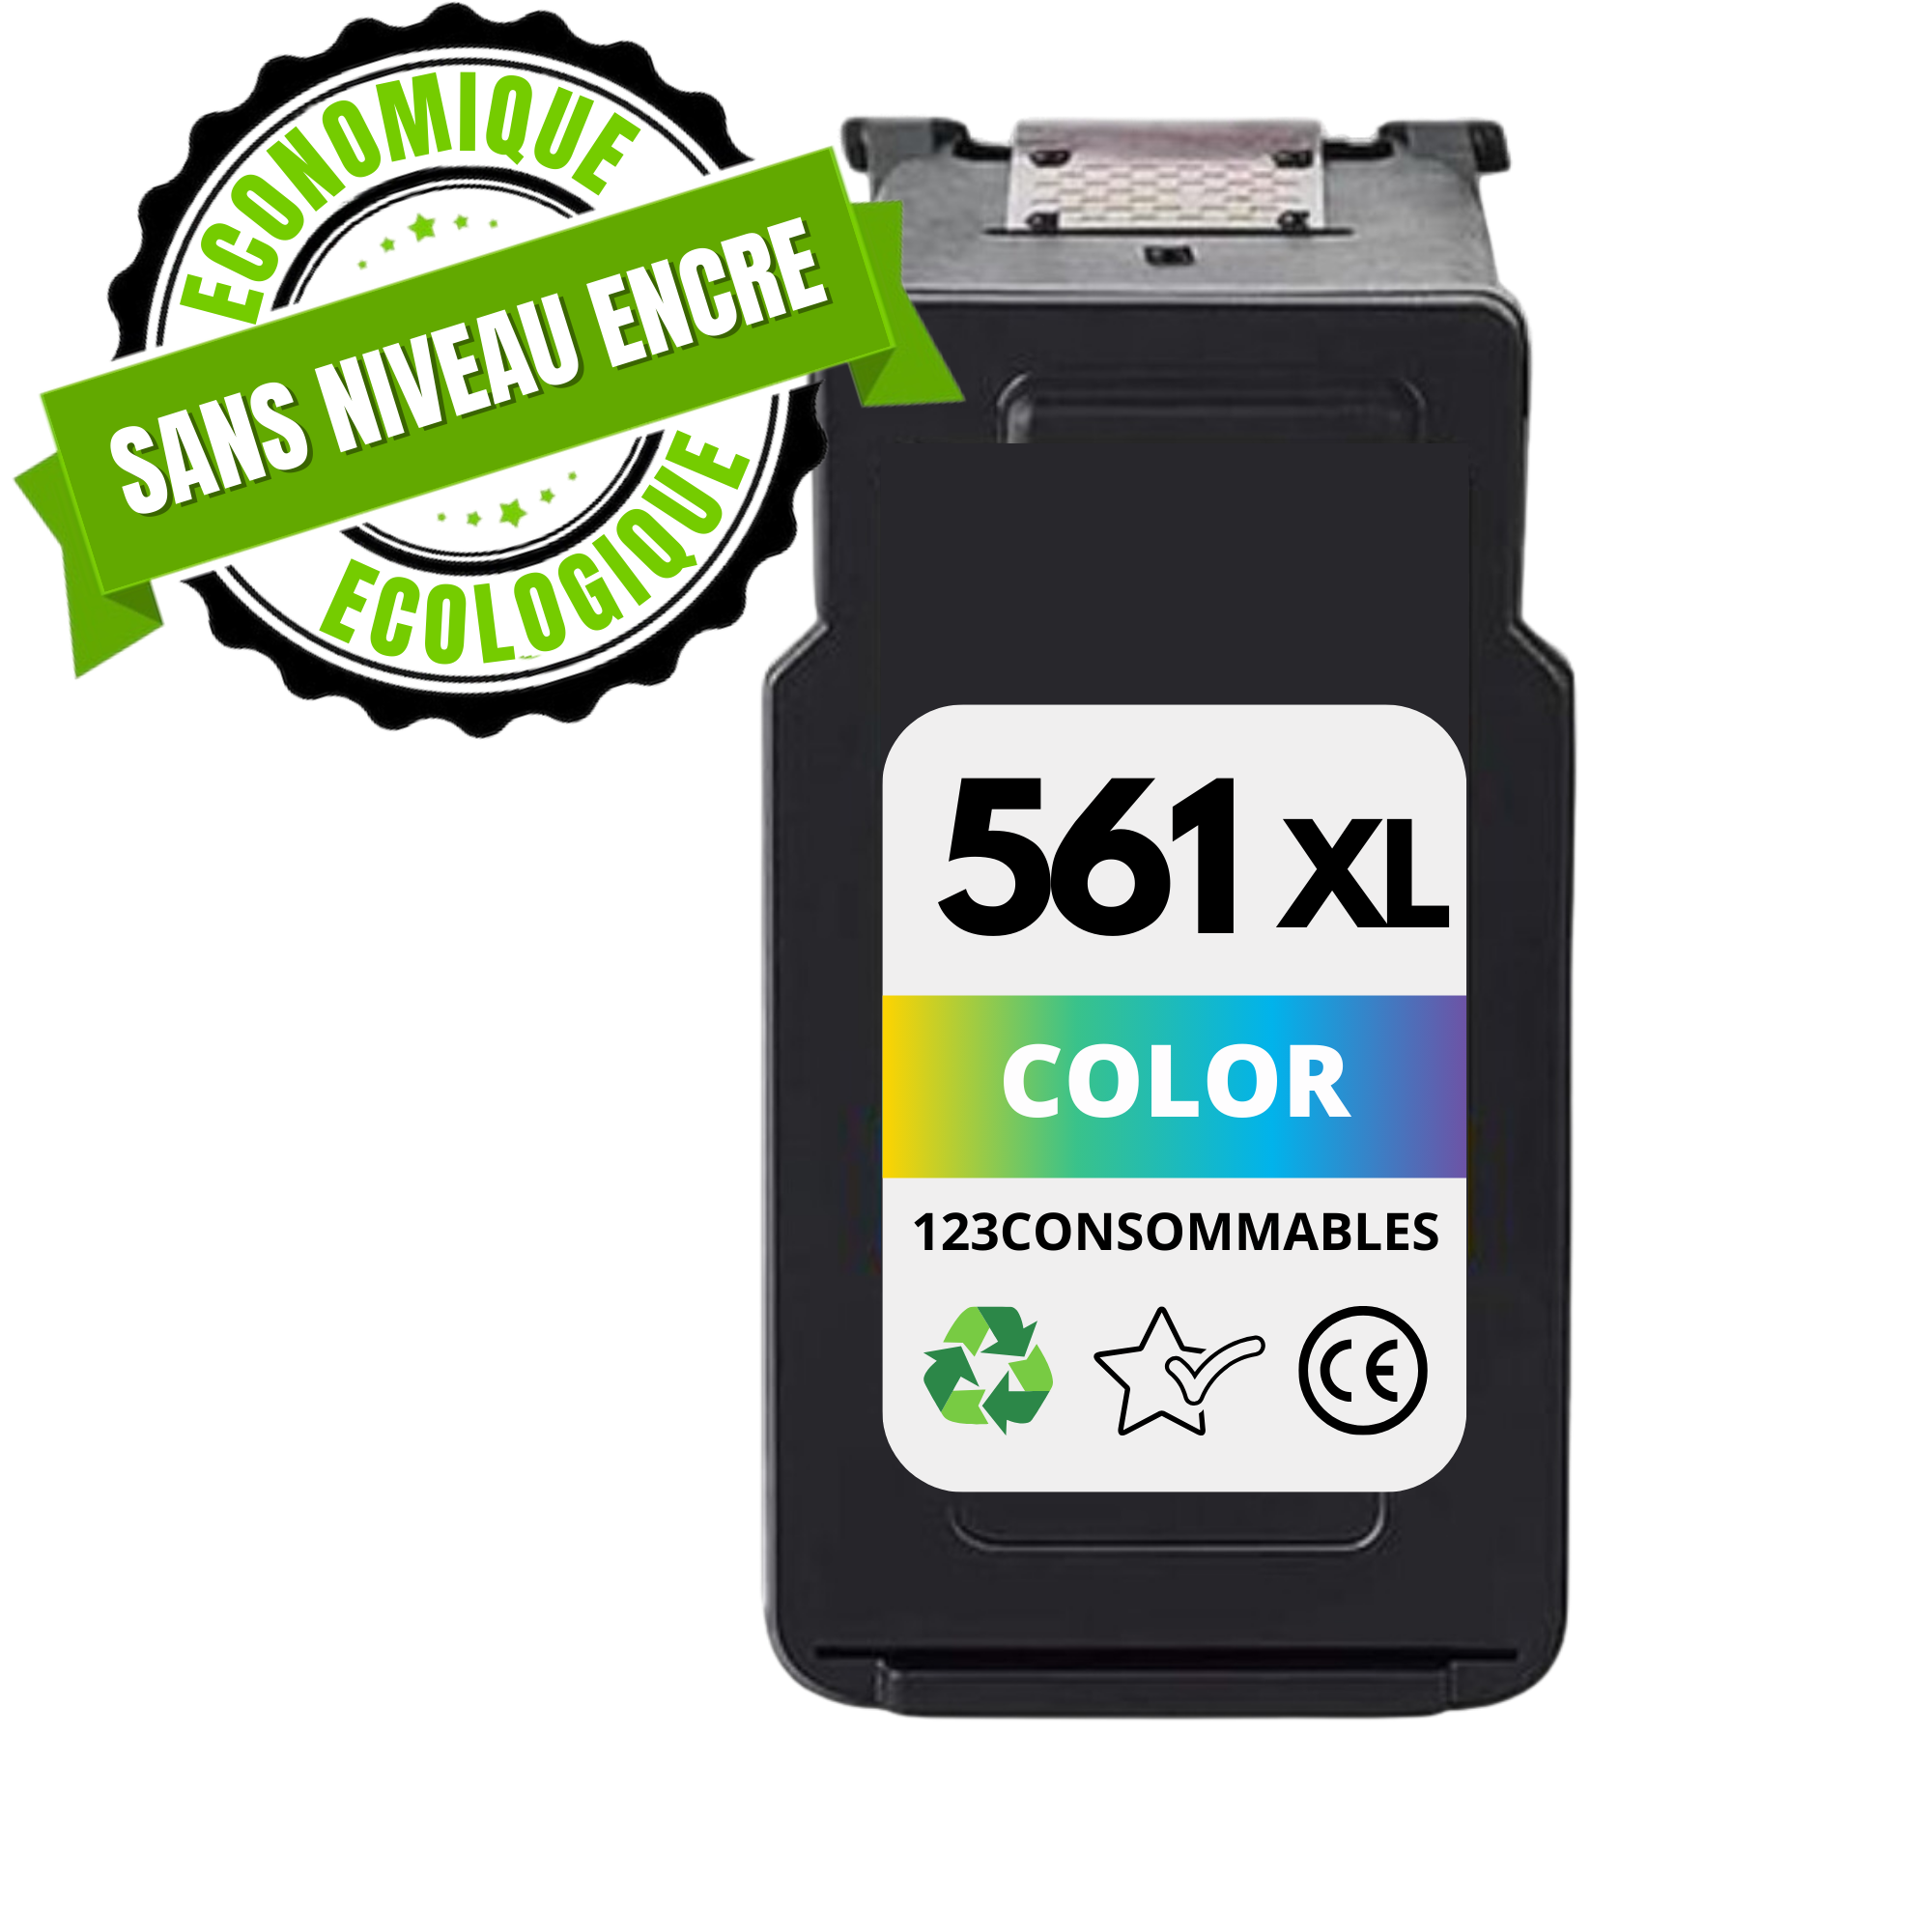 Cartouche compatible CANON CL-561XL couleur SANS NIVEAU ENCRE